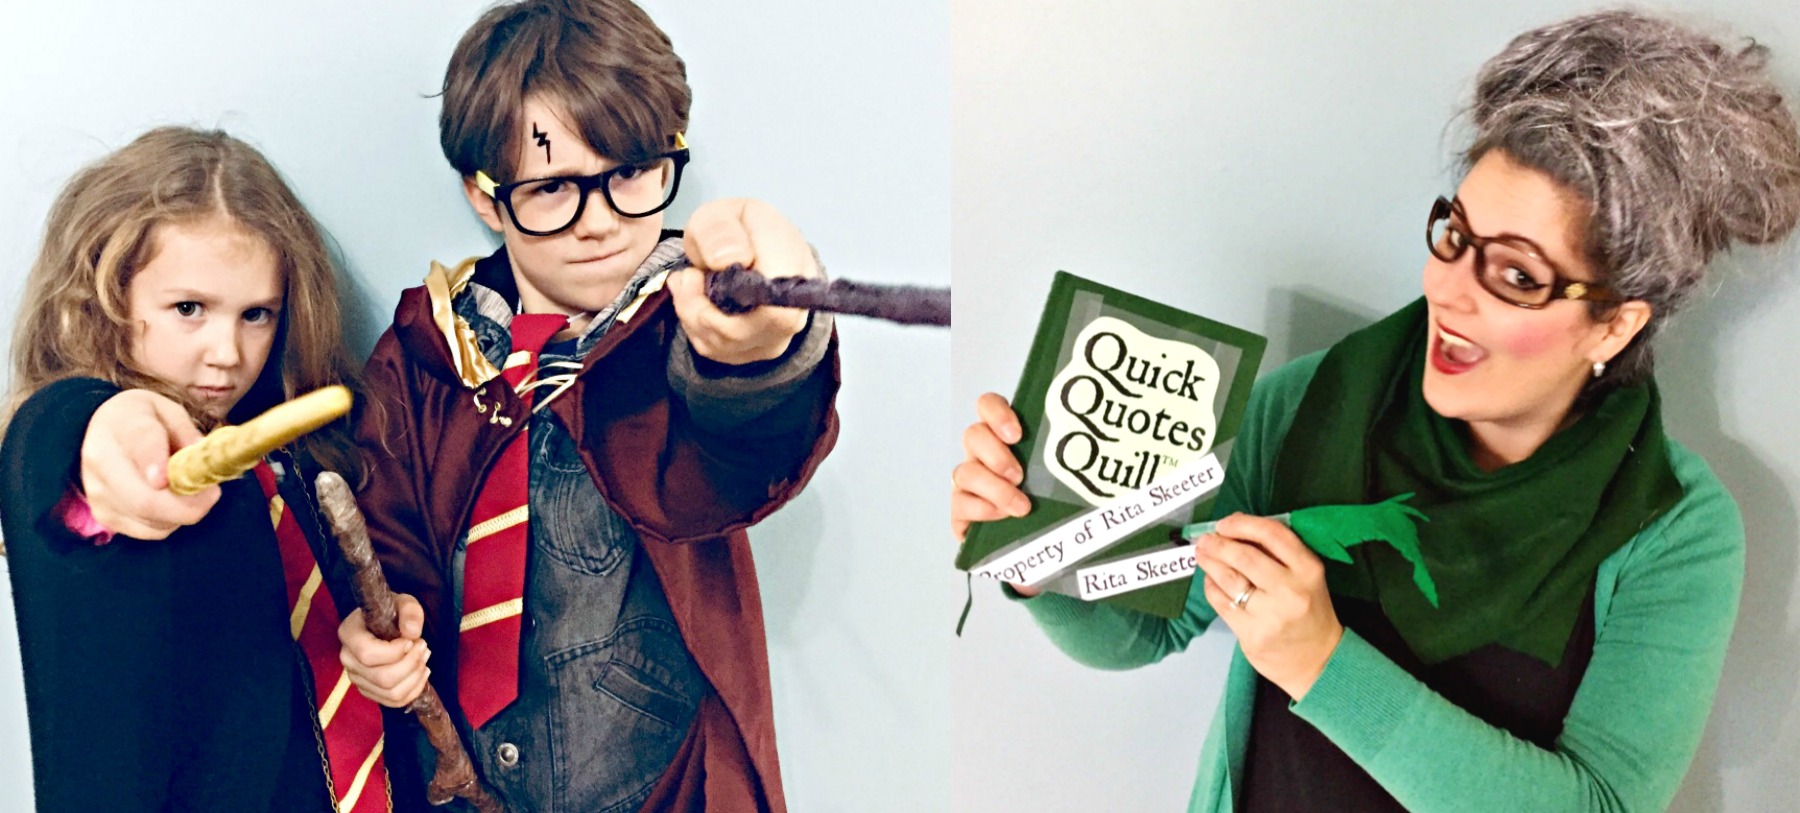 DIY Harry Potter costumes | DIY Quidditch broom craft | Hermione Granger costume | Rita Skeeter costume | {Heather's Handmade Life}